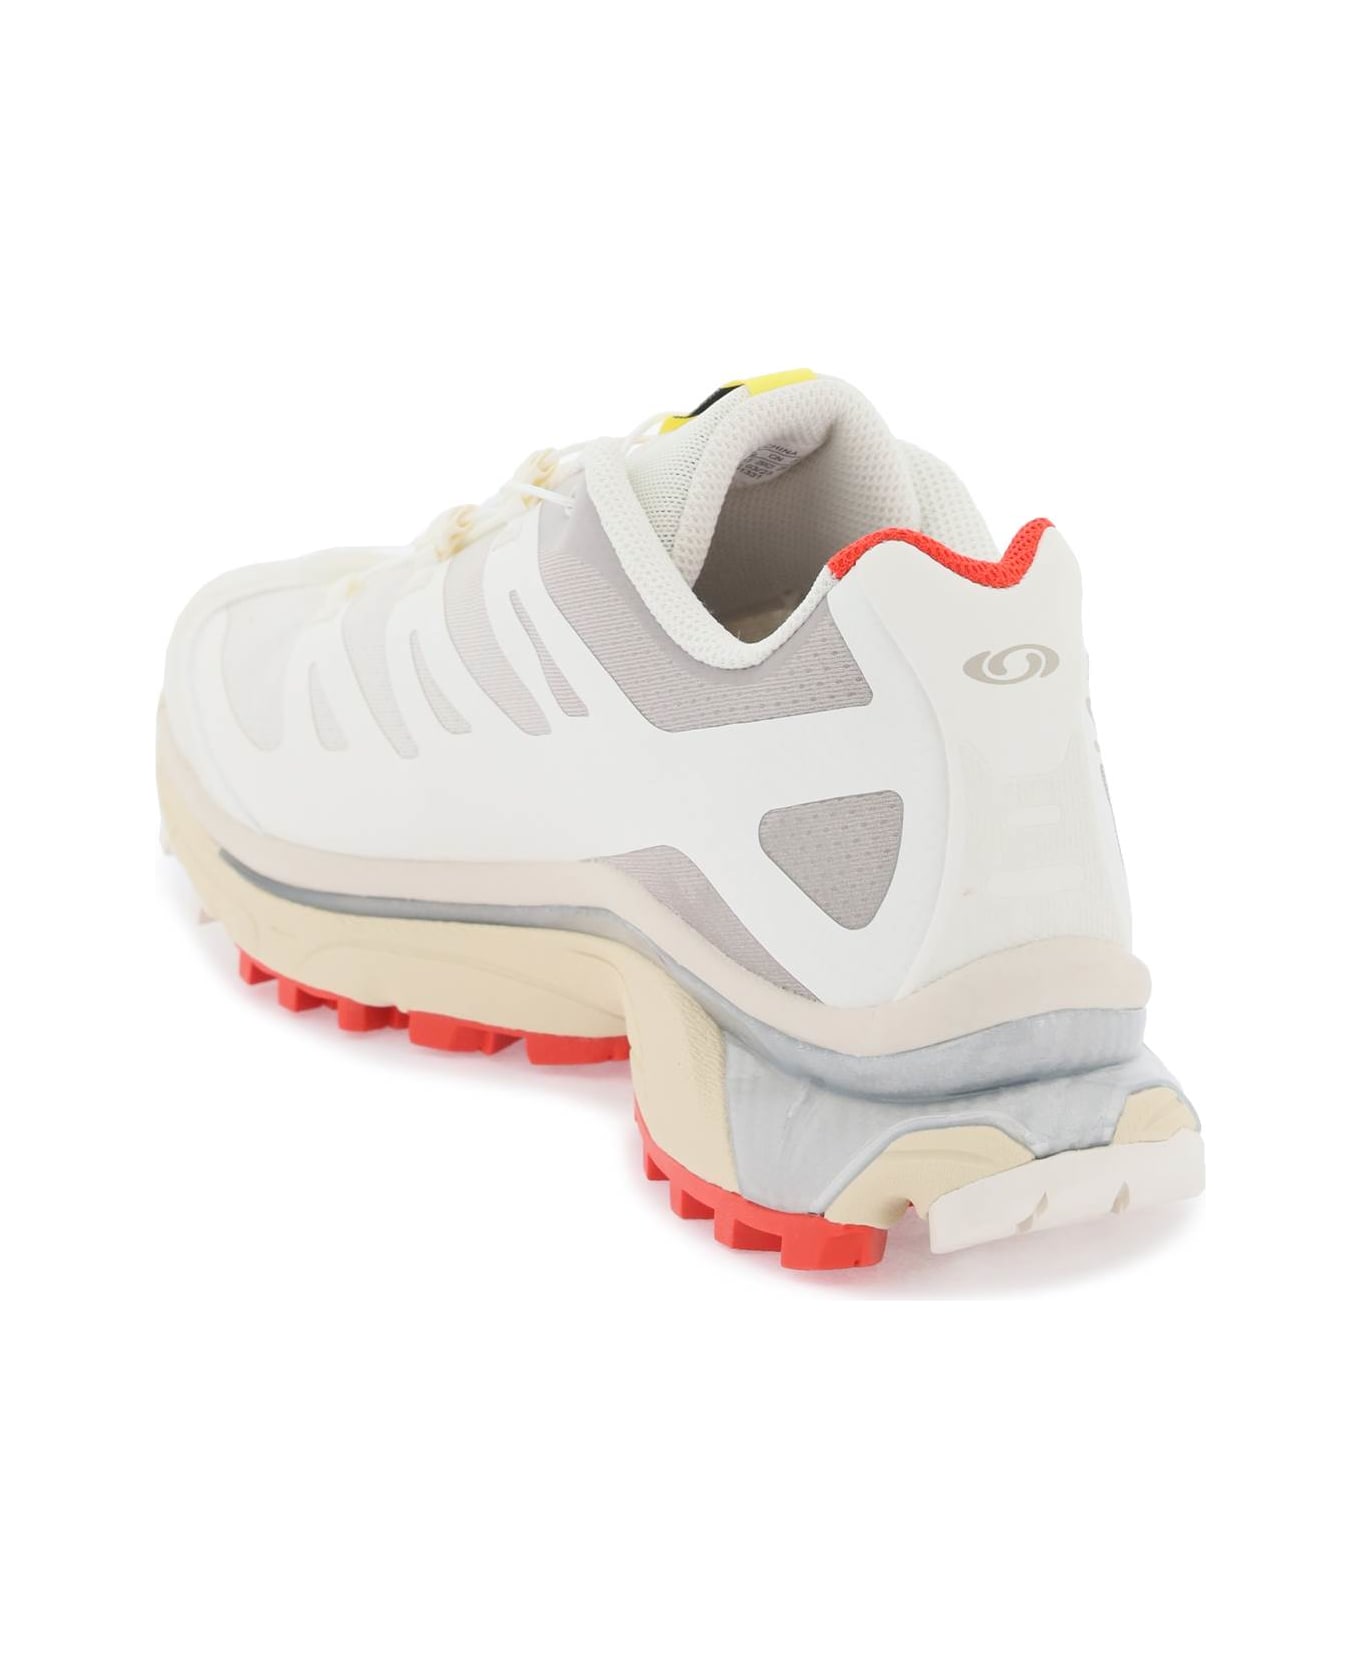 Salomon Xt-4 Og Sneakers - VANILLA ICE FIERY RED WHITE (White)